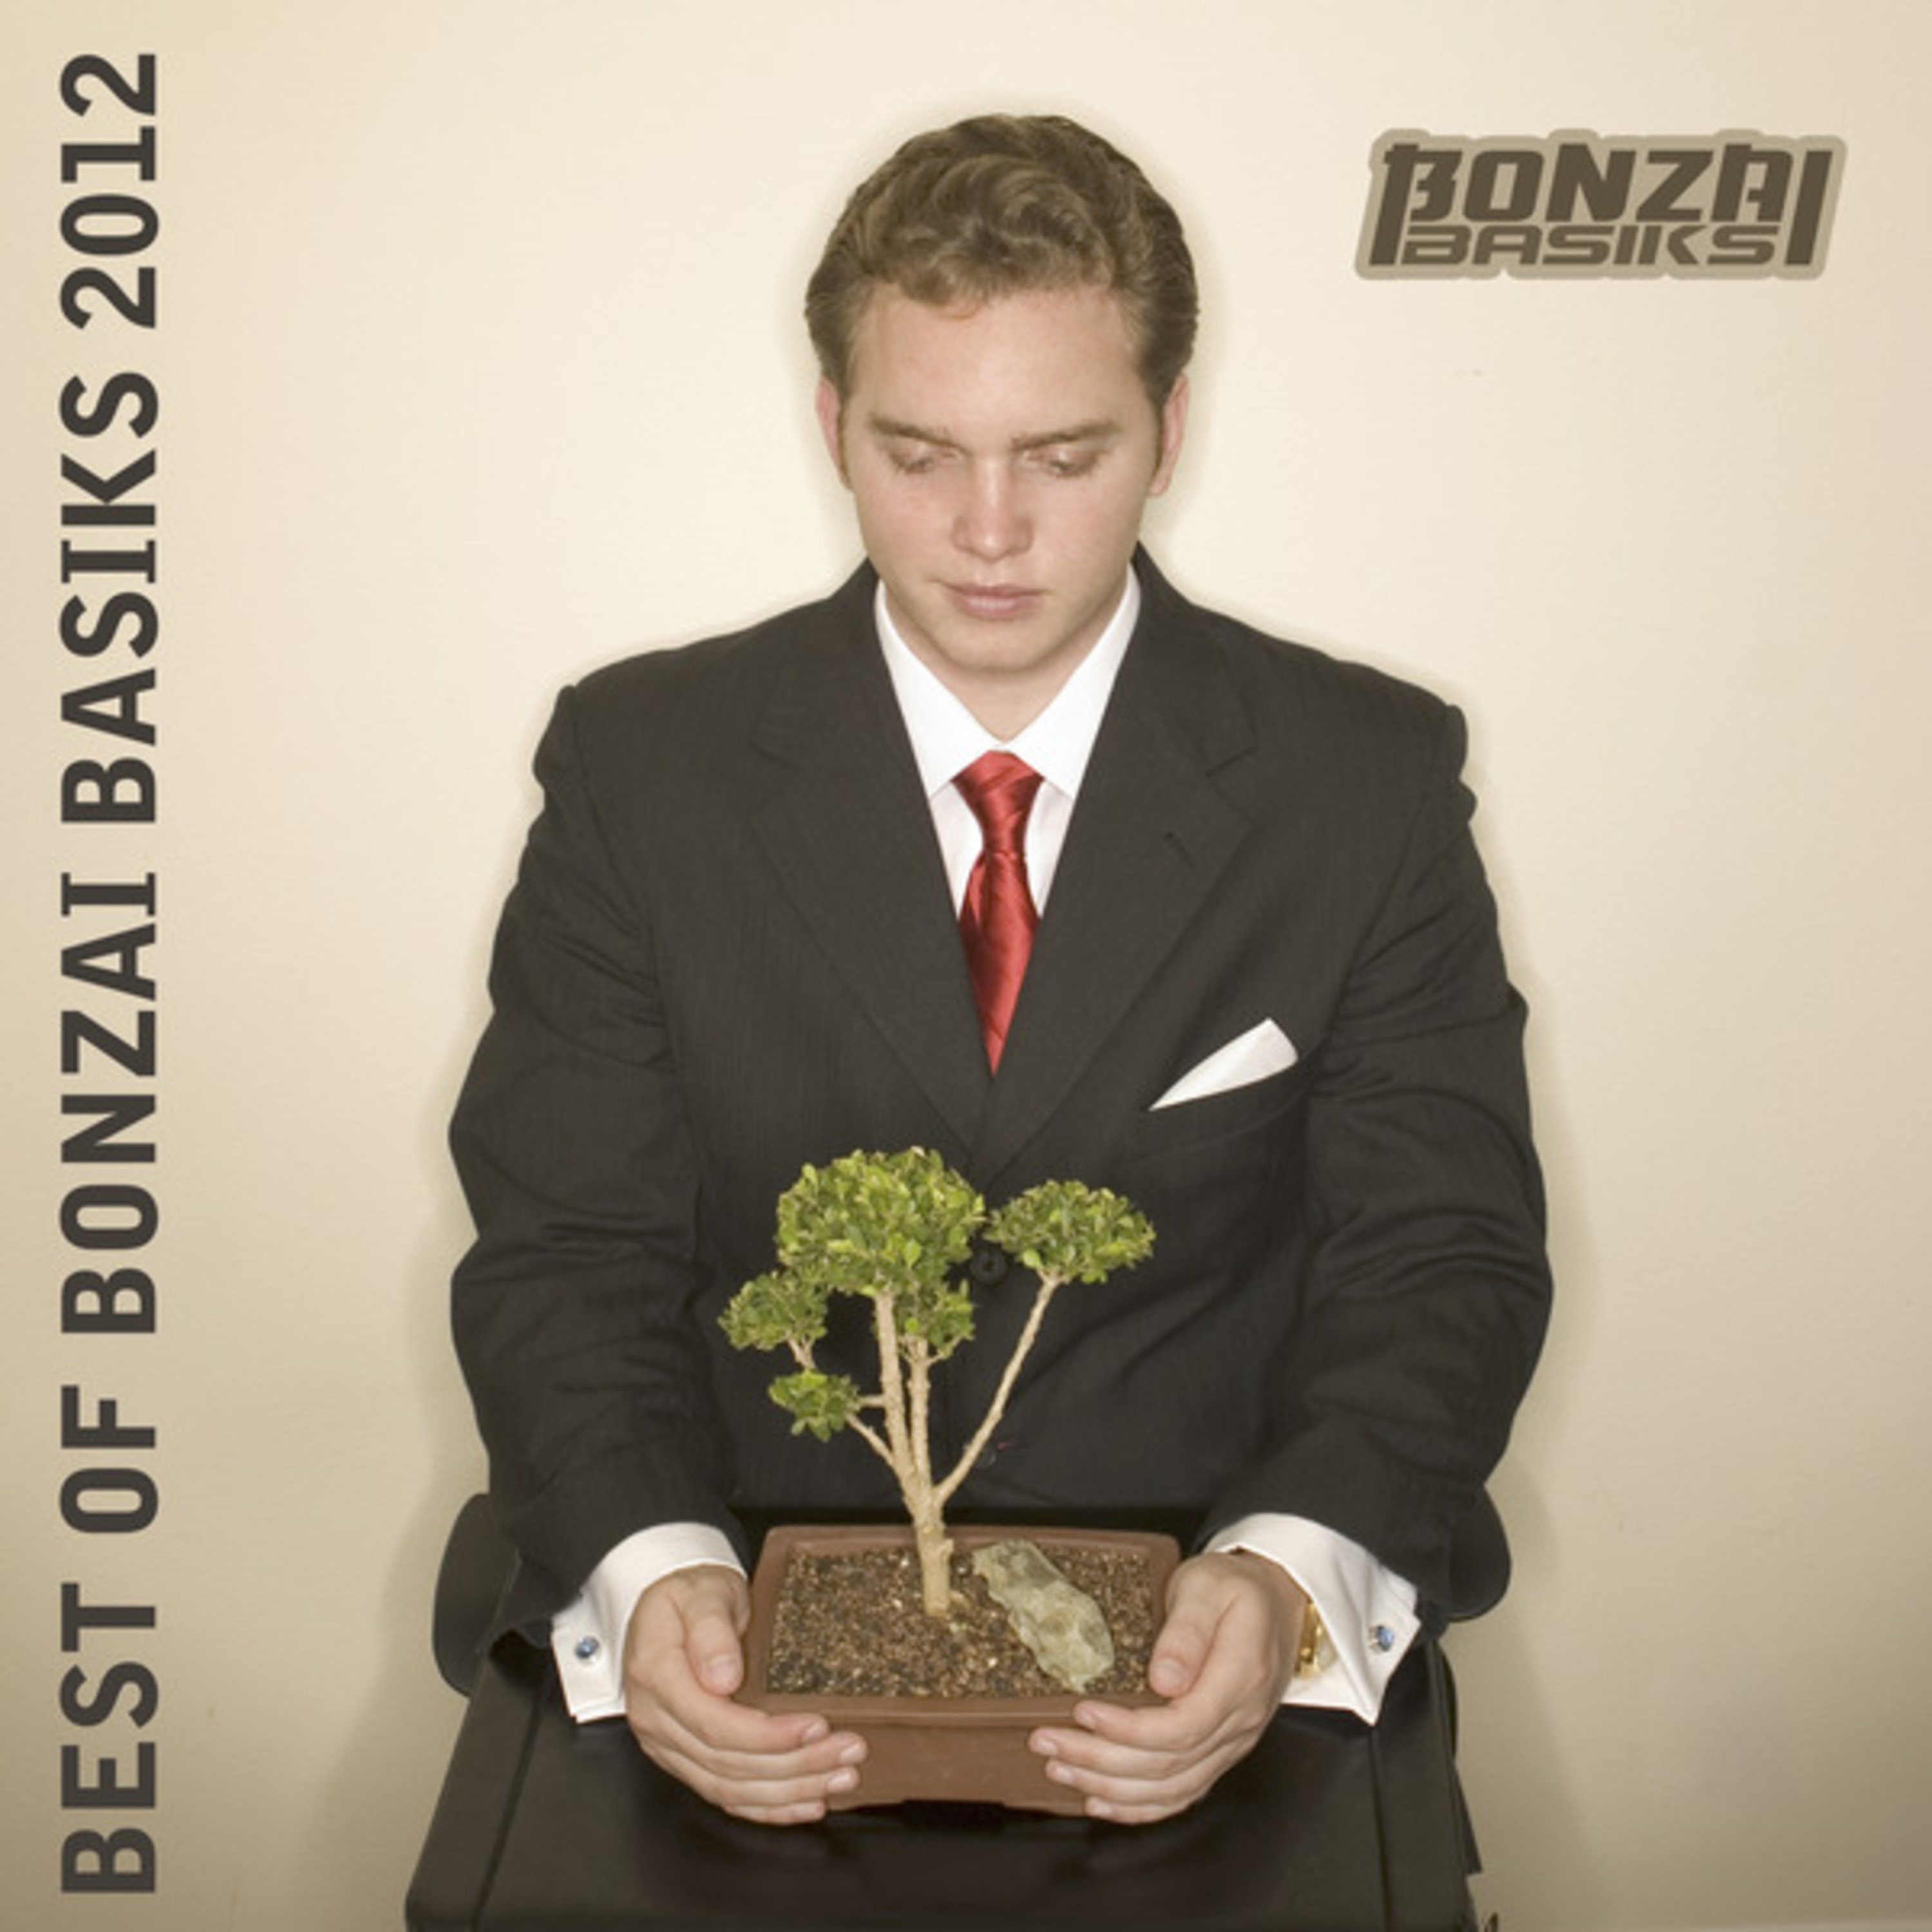 Best Of Bonzai Basiks 2012